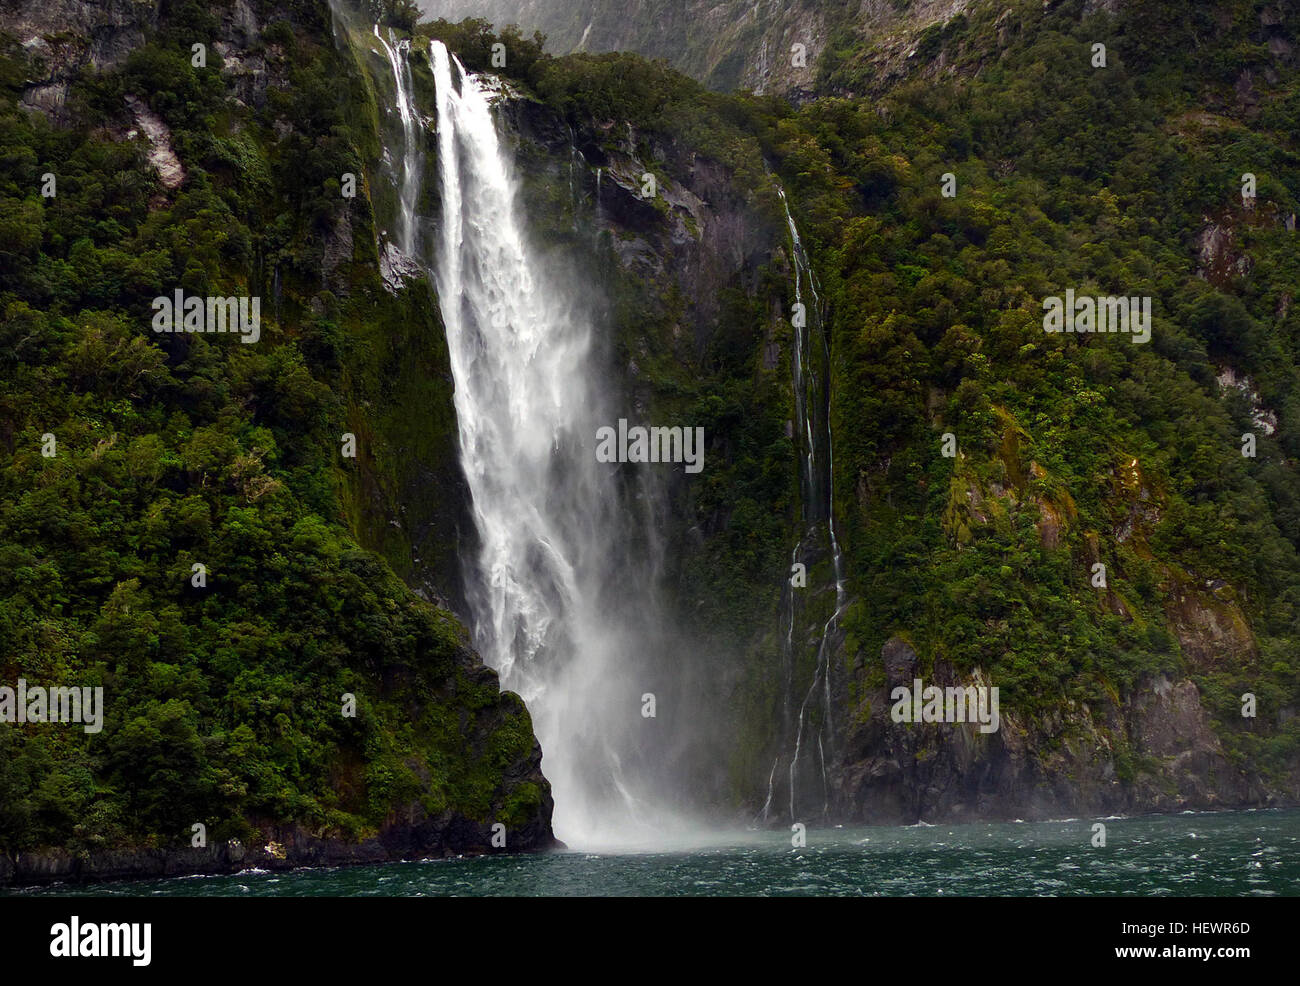 L'une des attractions à voir des cascades de Nouvelle-Zélande, Stirling Falls, deuxième nom Waimanu Falls, est la plus belle cascade dans le célèbre Milford Sound. Accessible via une croisière ou Milford Sound Milford Sound Vol panoramique. Banque D'Images